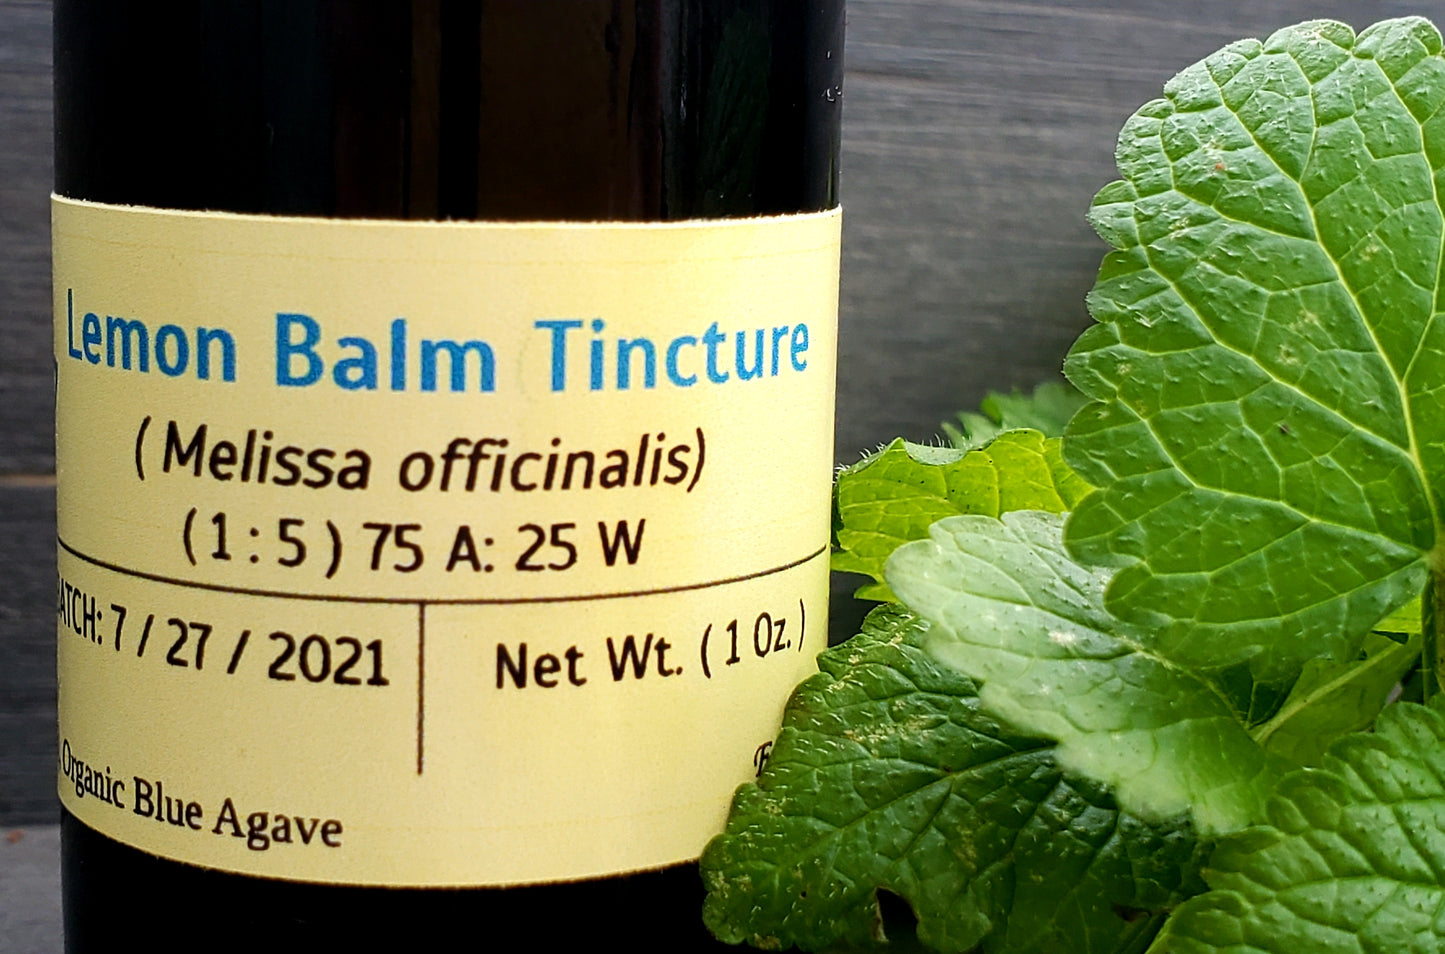 Lemon Balm Tincture (Melissa officinalis)